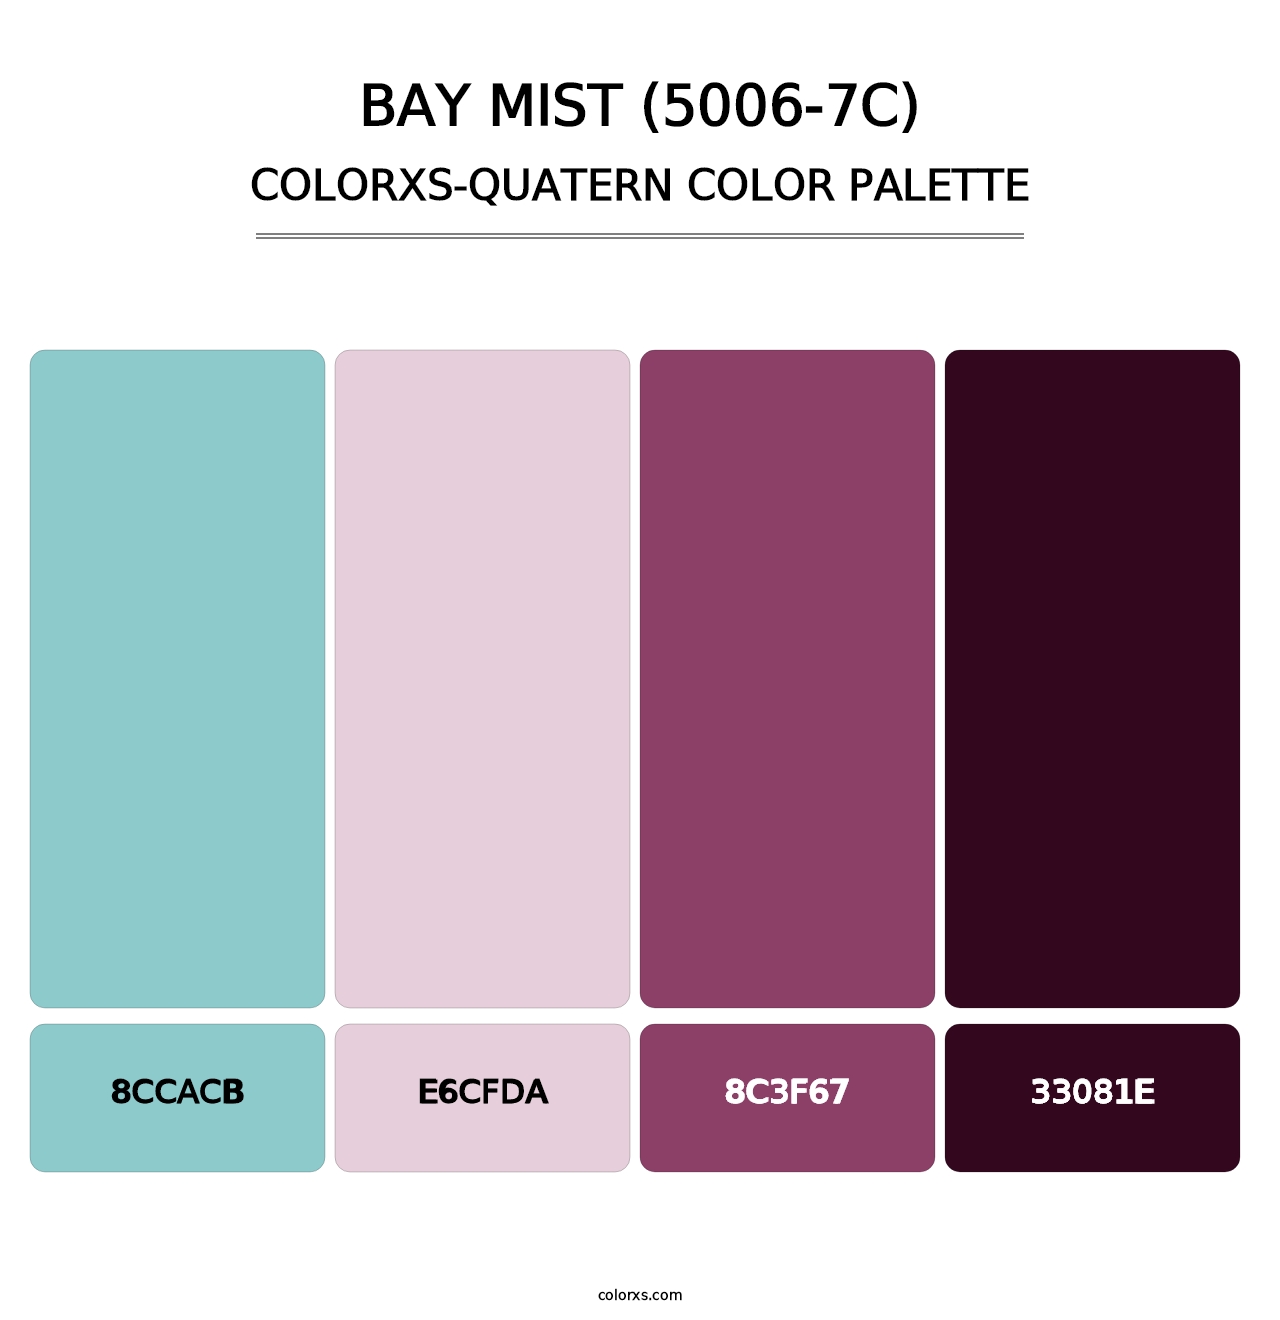 Bay Mist (5006-7C) - Colorxs Quatern Palette